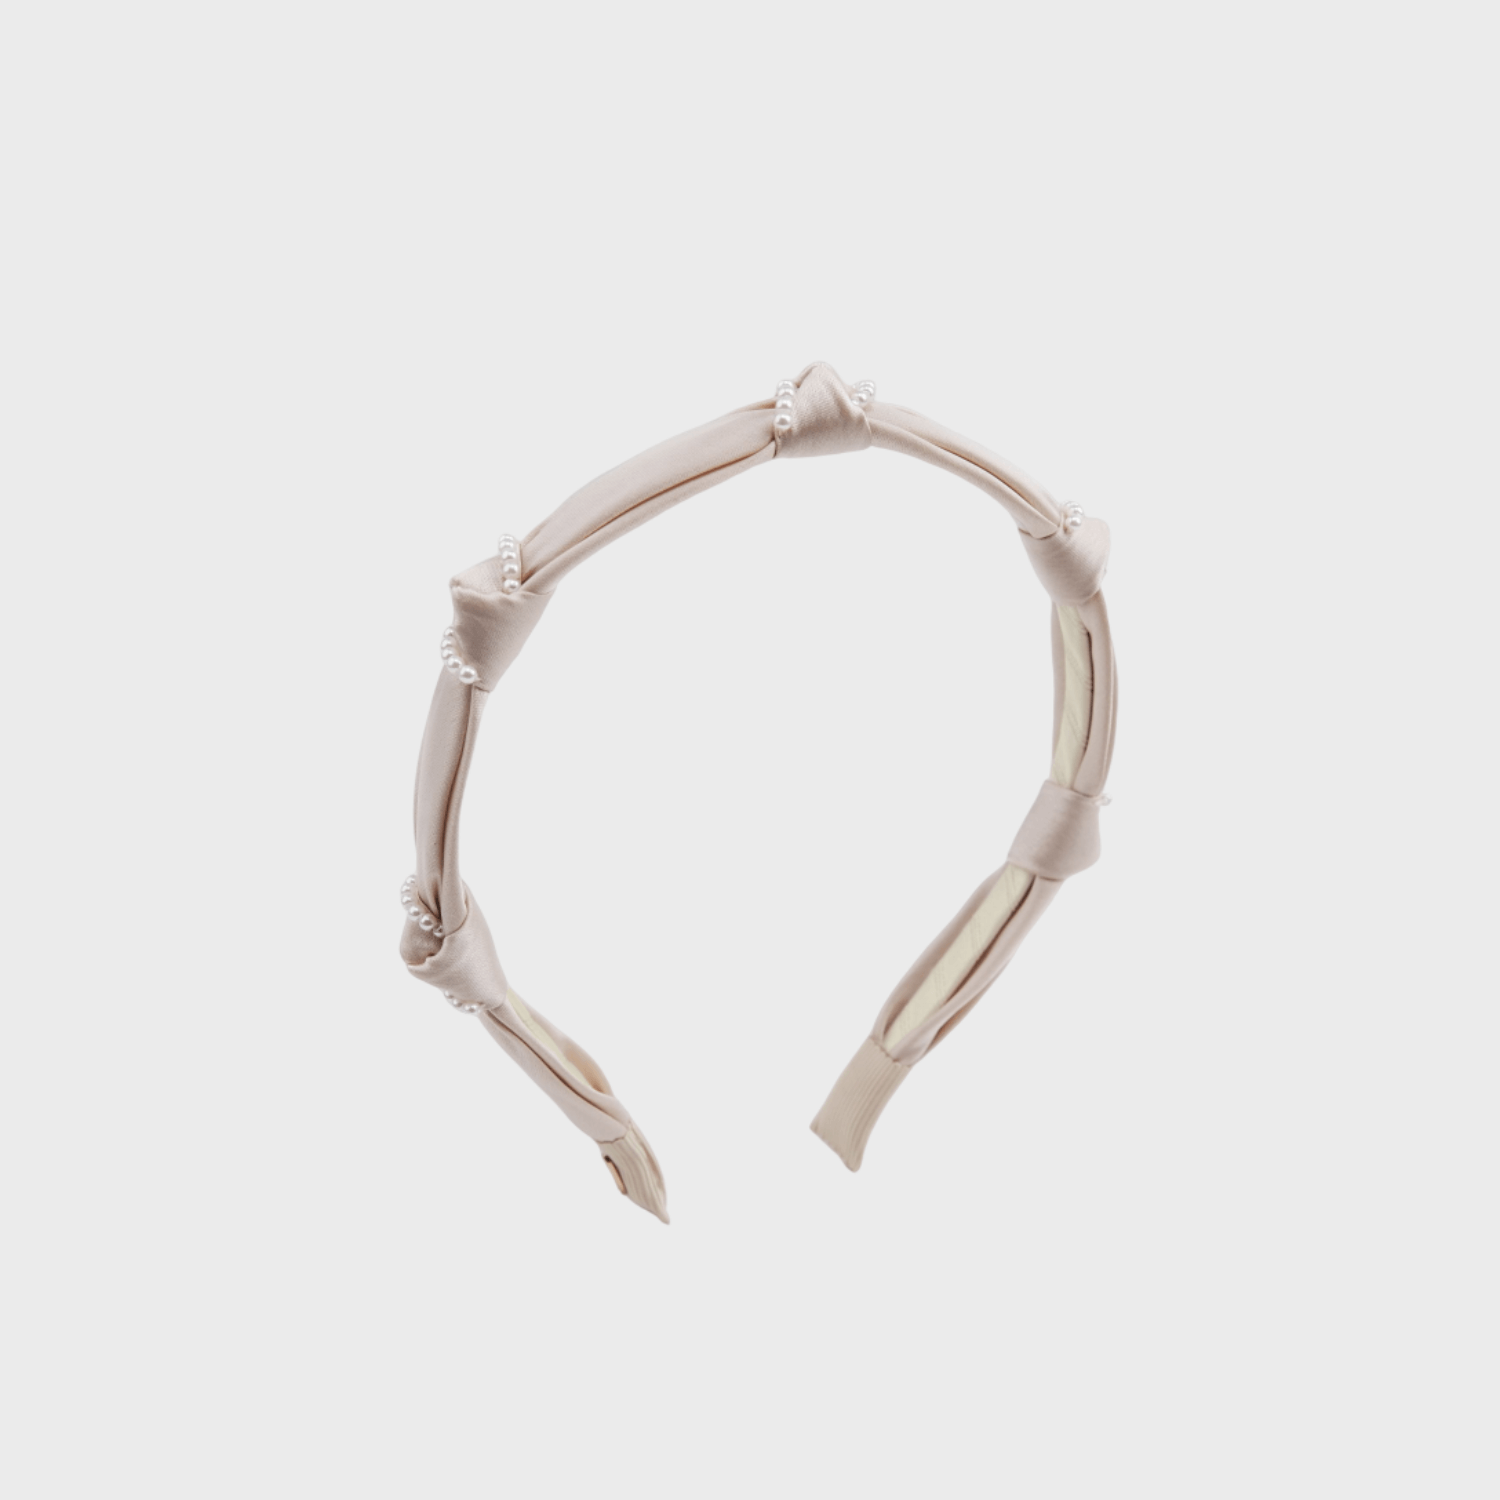 Satin Pearl Thin Headband (Knot & 2 Strands)